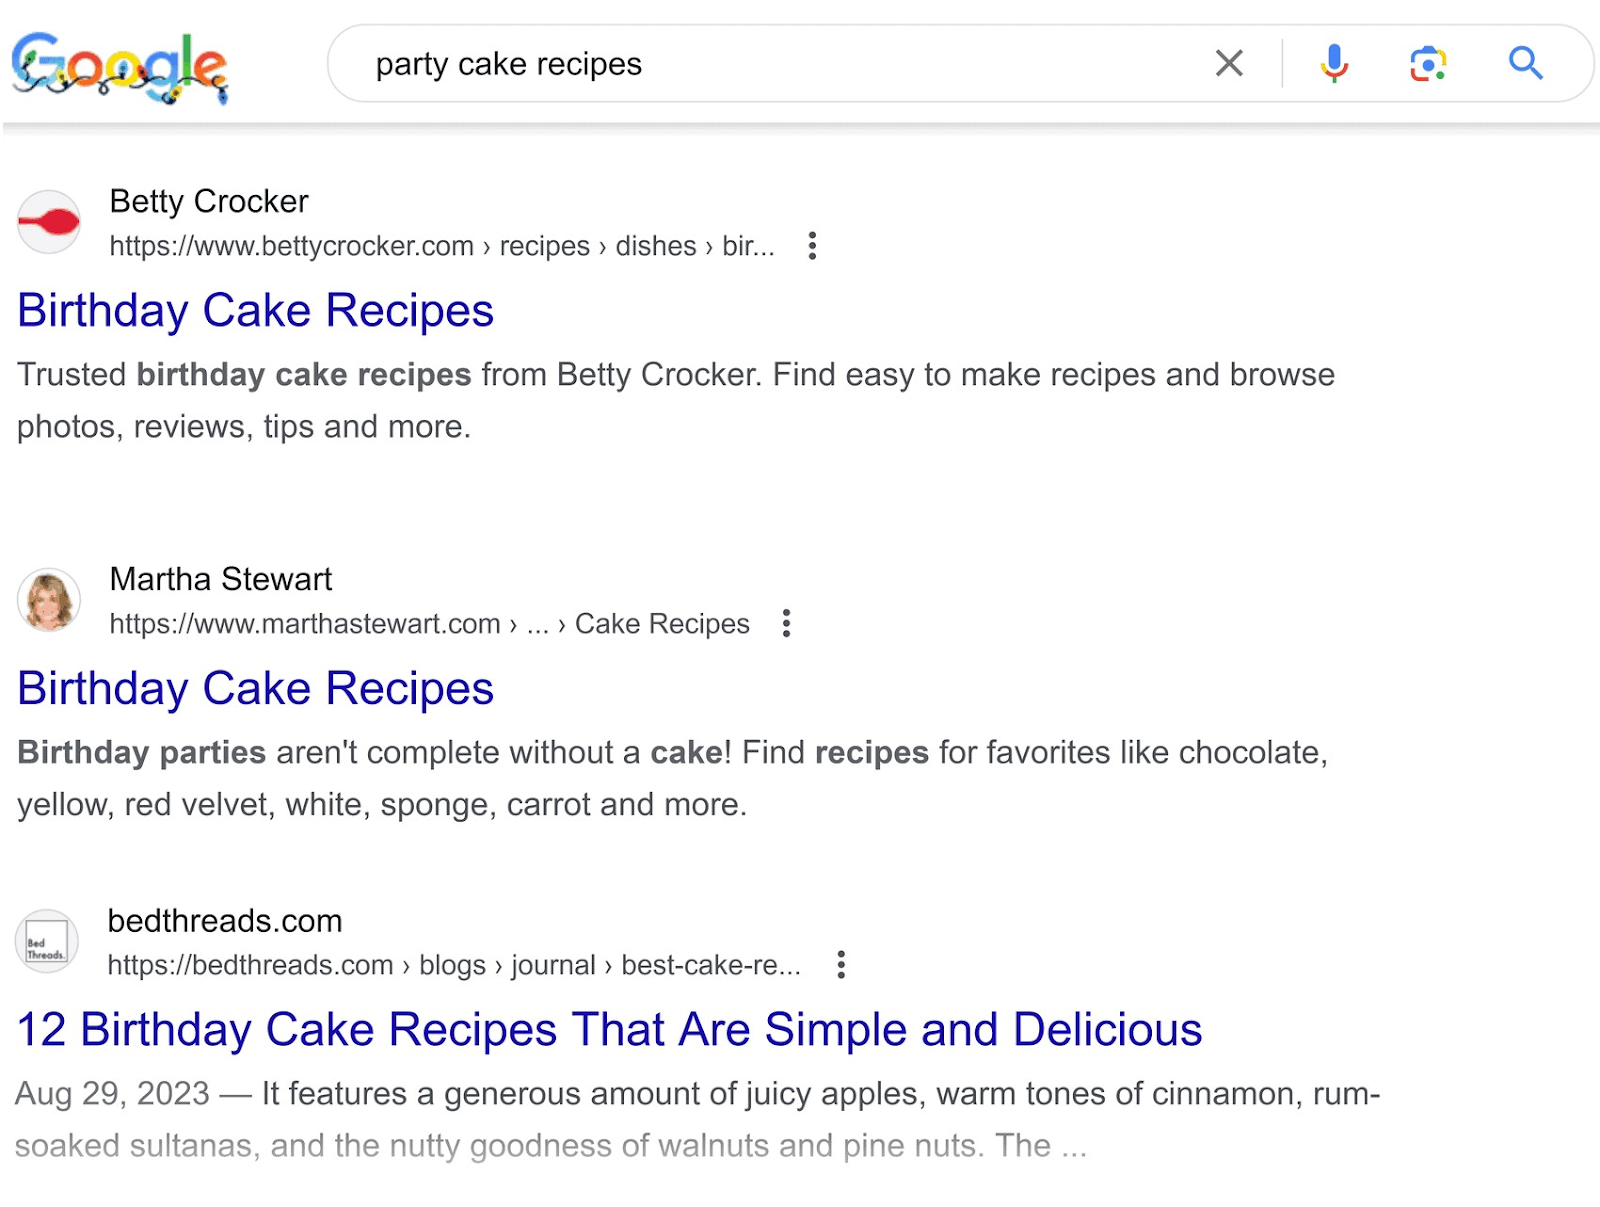 SERP standard de Google pour les « recettes de gâteaux de fête »